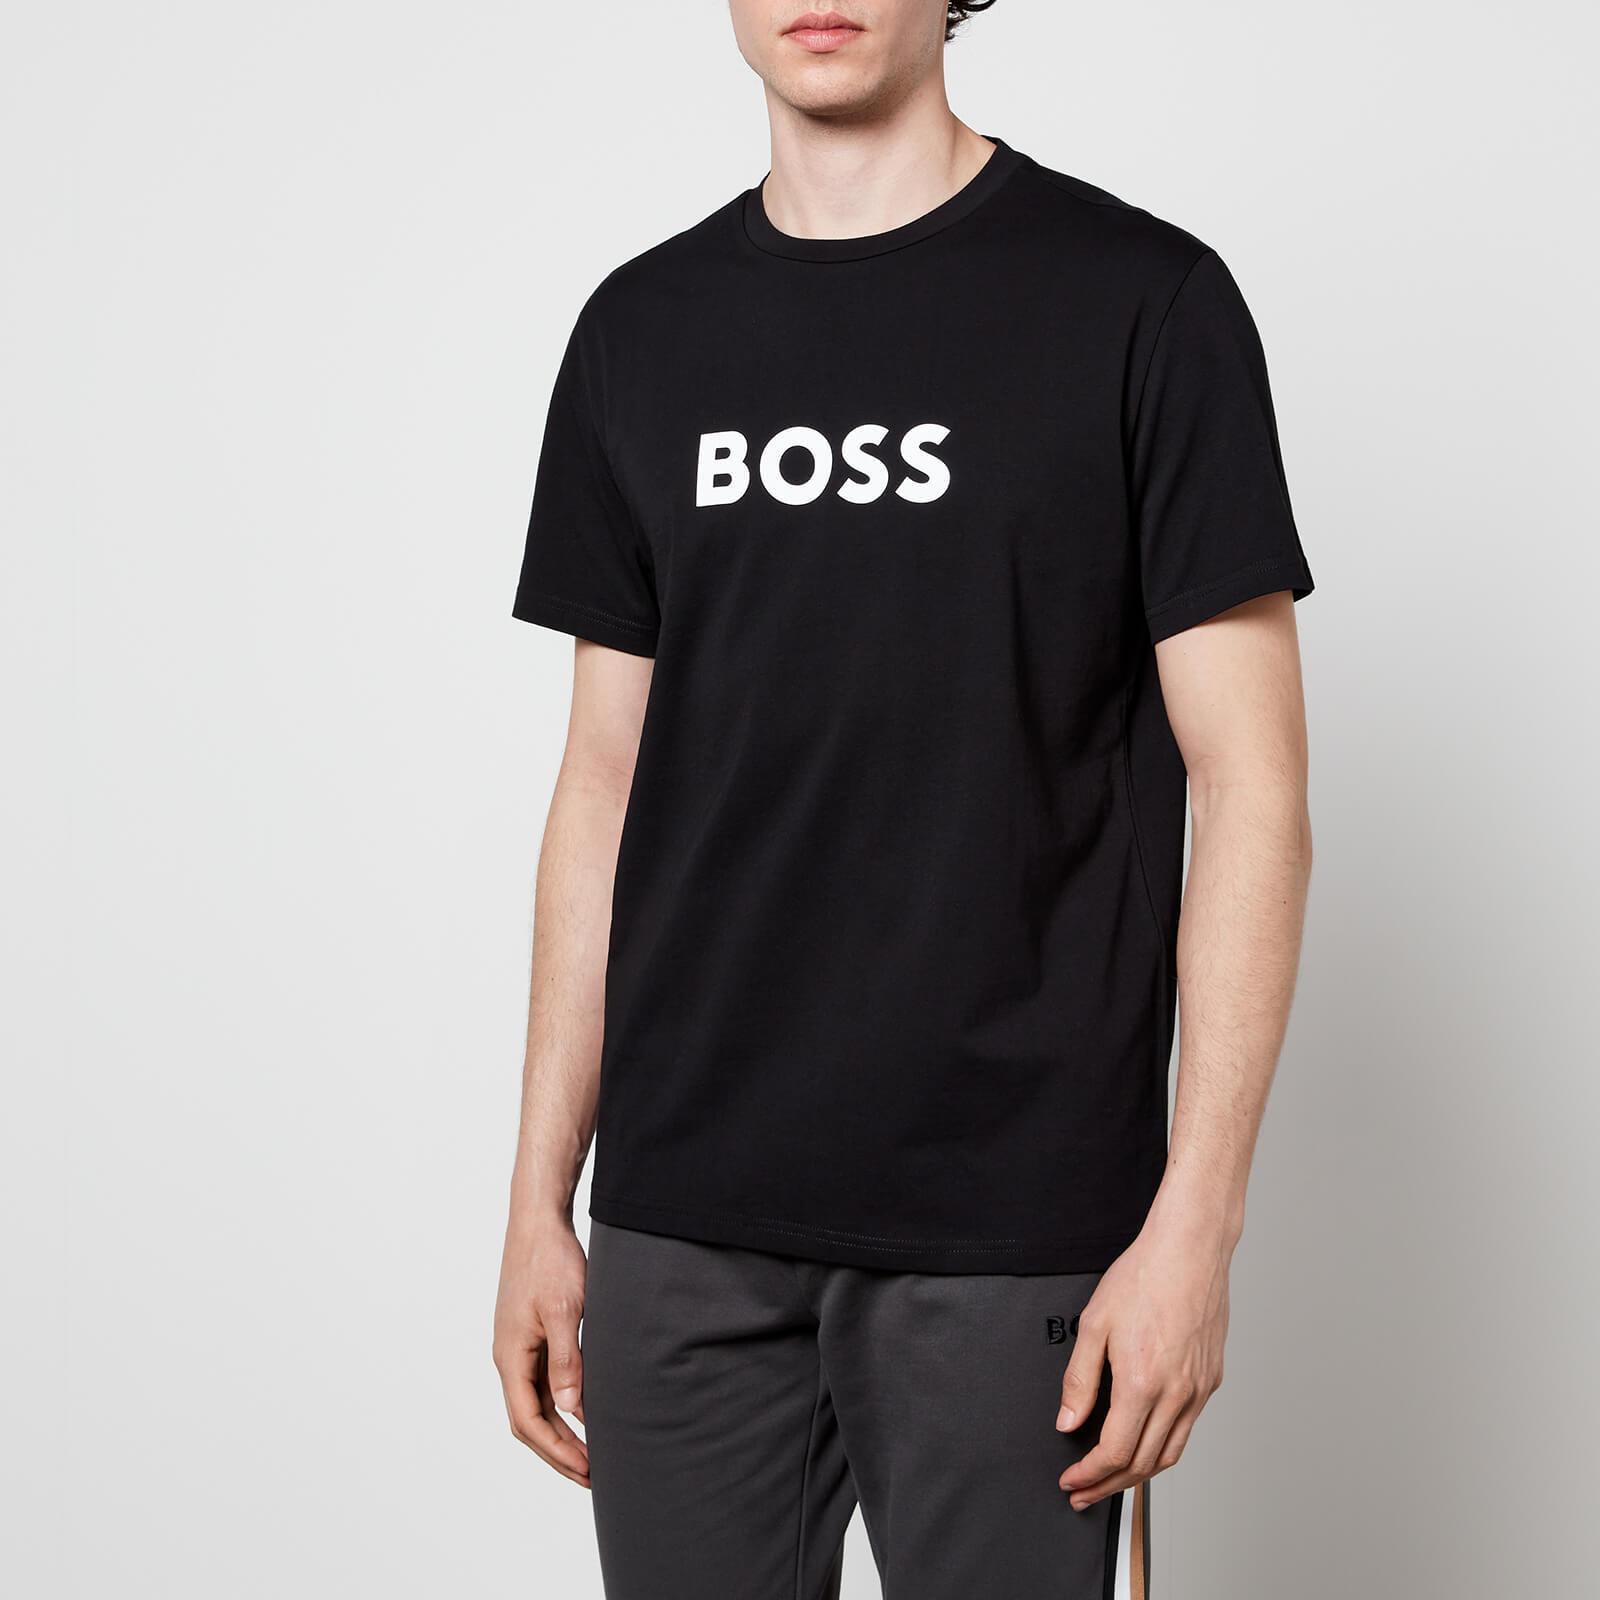 BOSS Bodywear Men's Roundneck T-Shirt - Black - S